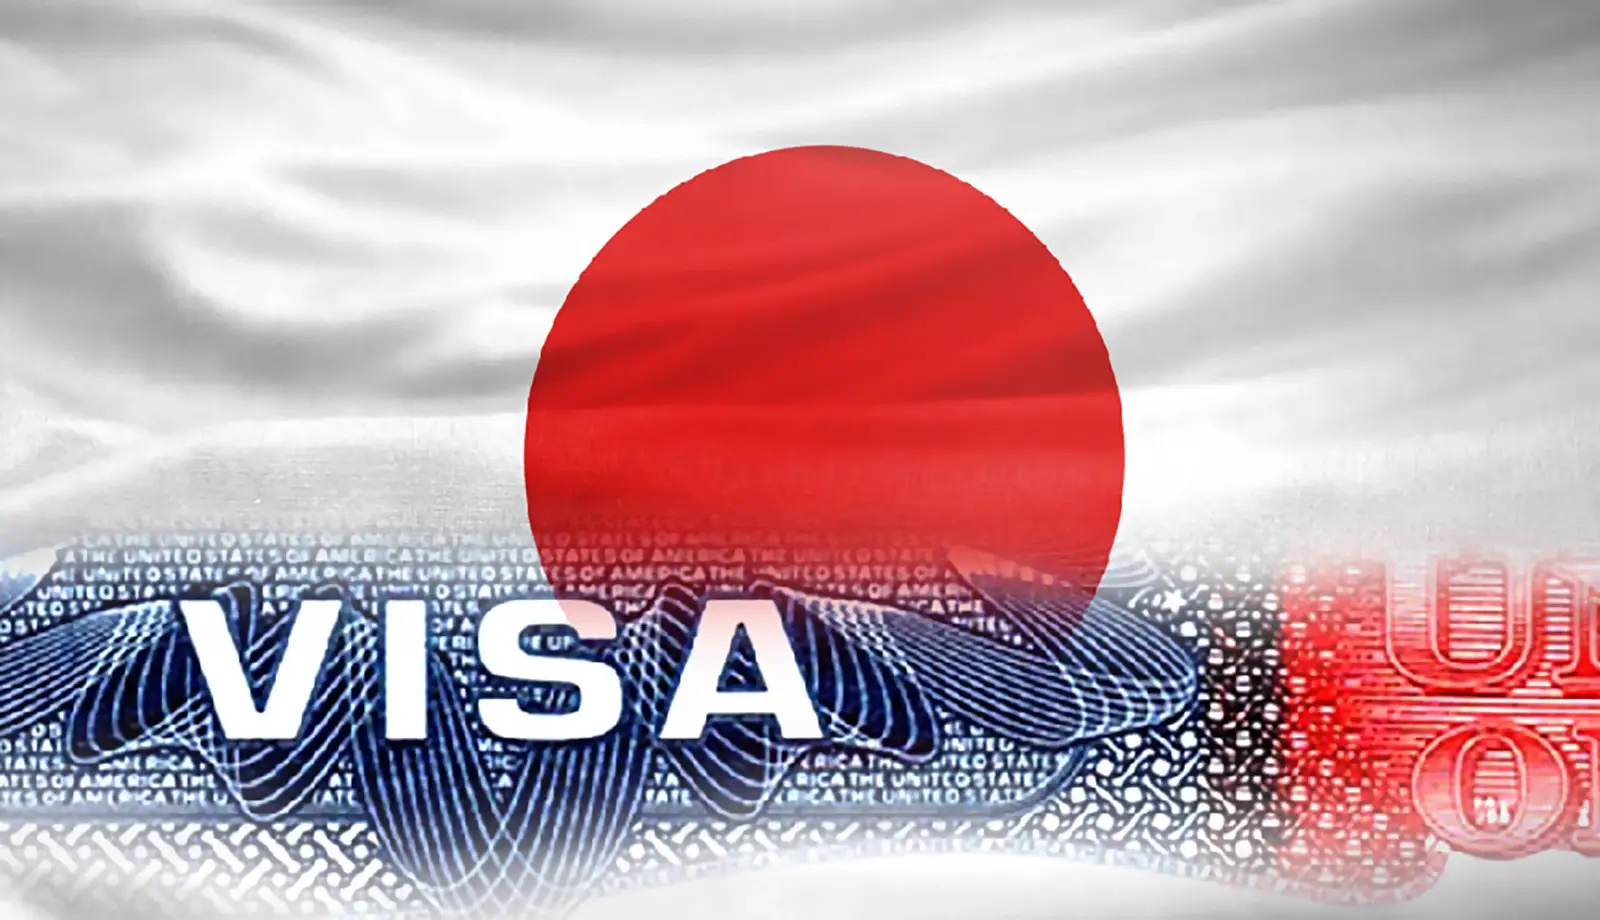 Kinh nghiệm xin Visa Nhật Bản